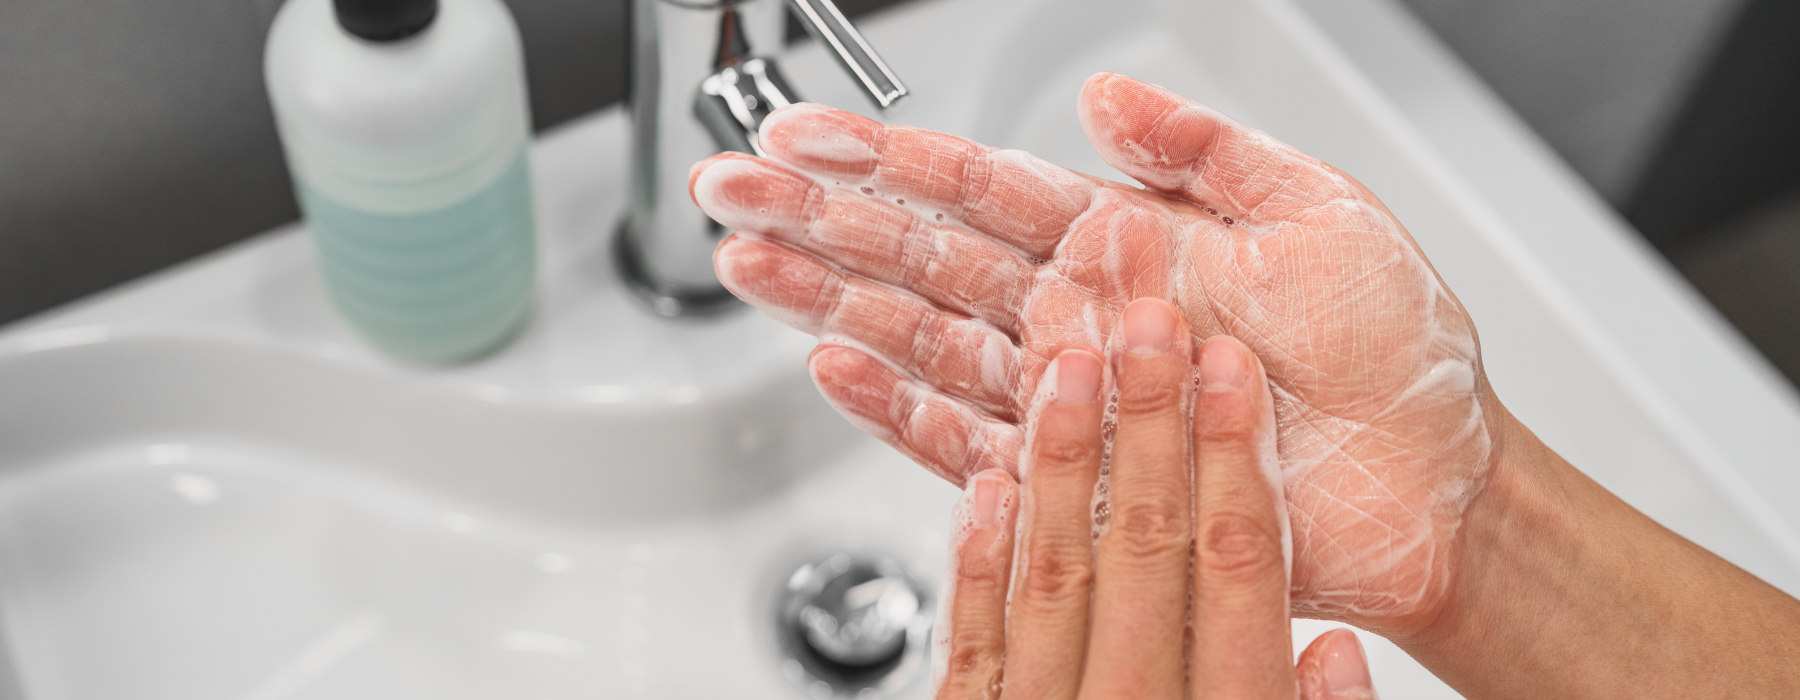 Má higienização das mãos: como evitar infecções?